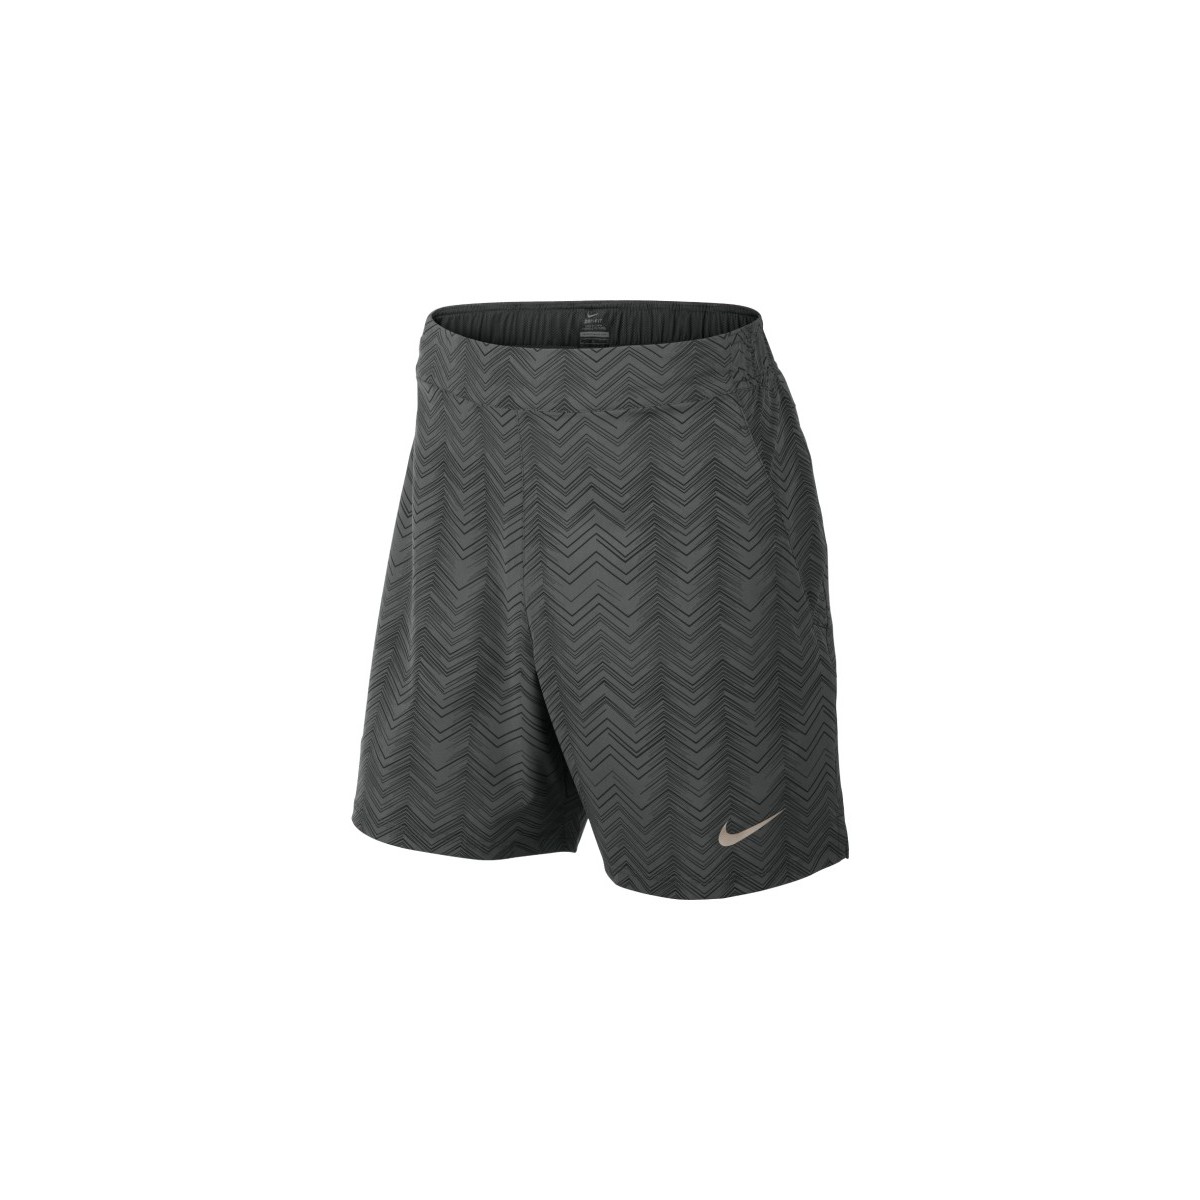 Short Nike Gladiator Nadal - Gris 